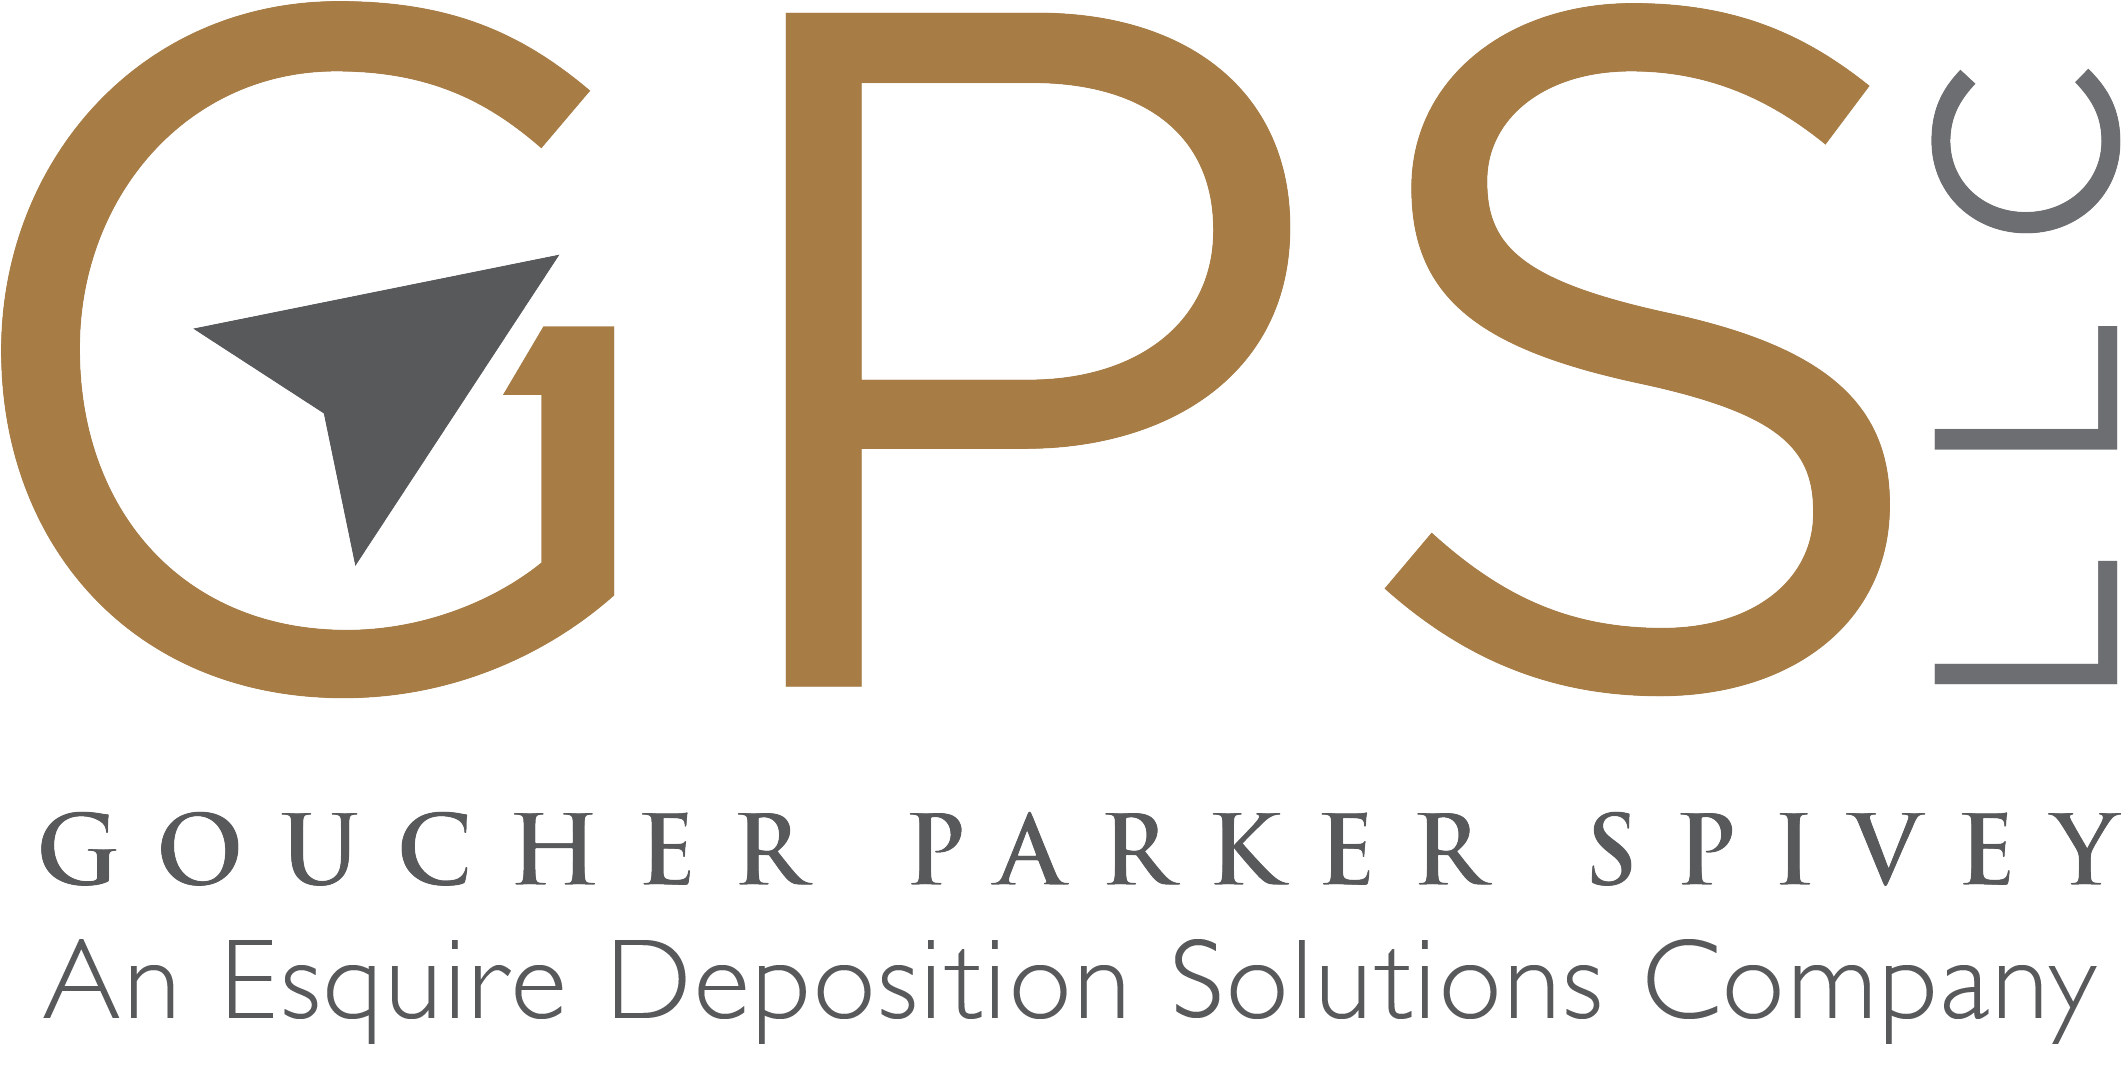 GOUCHER PARKER SPIVEY, LLC